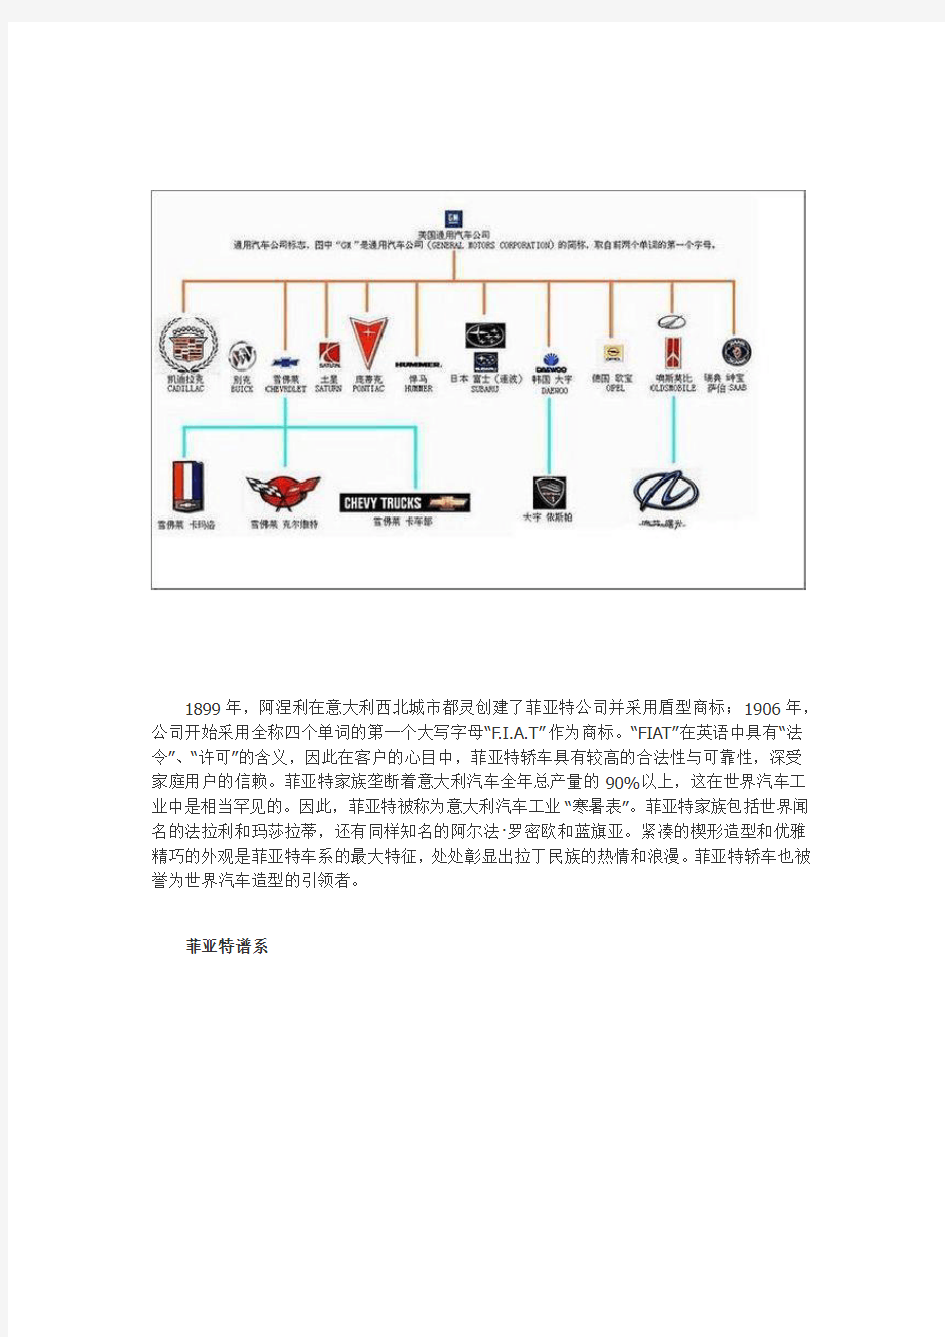 世界各大汽车公司旗下品牌及其标志【图】